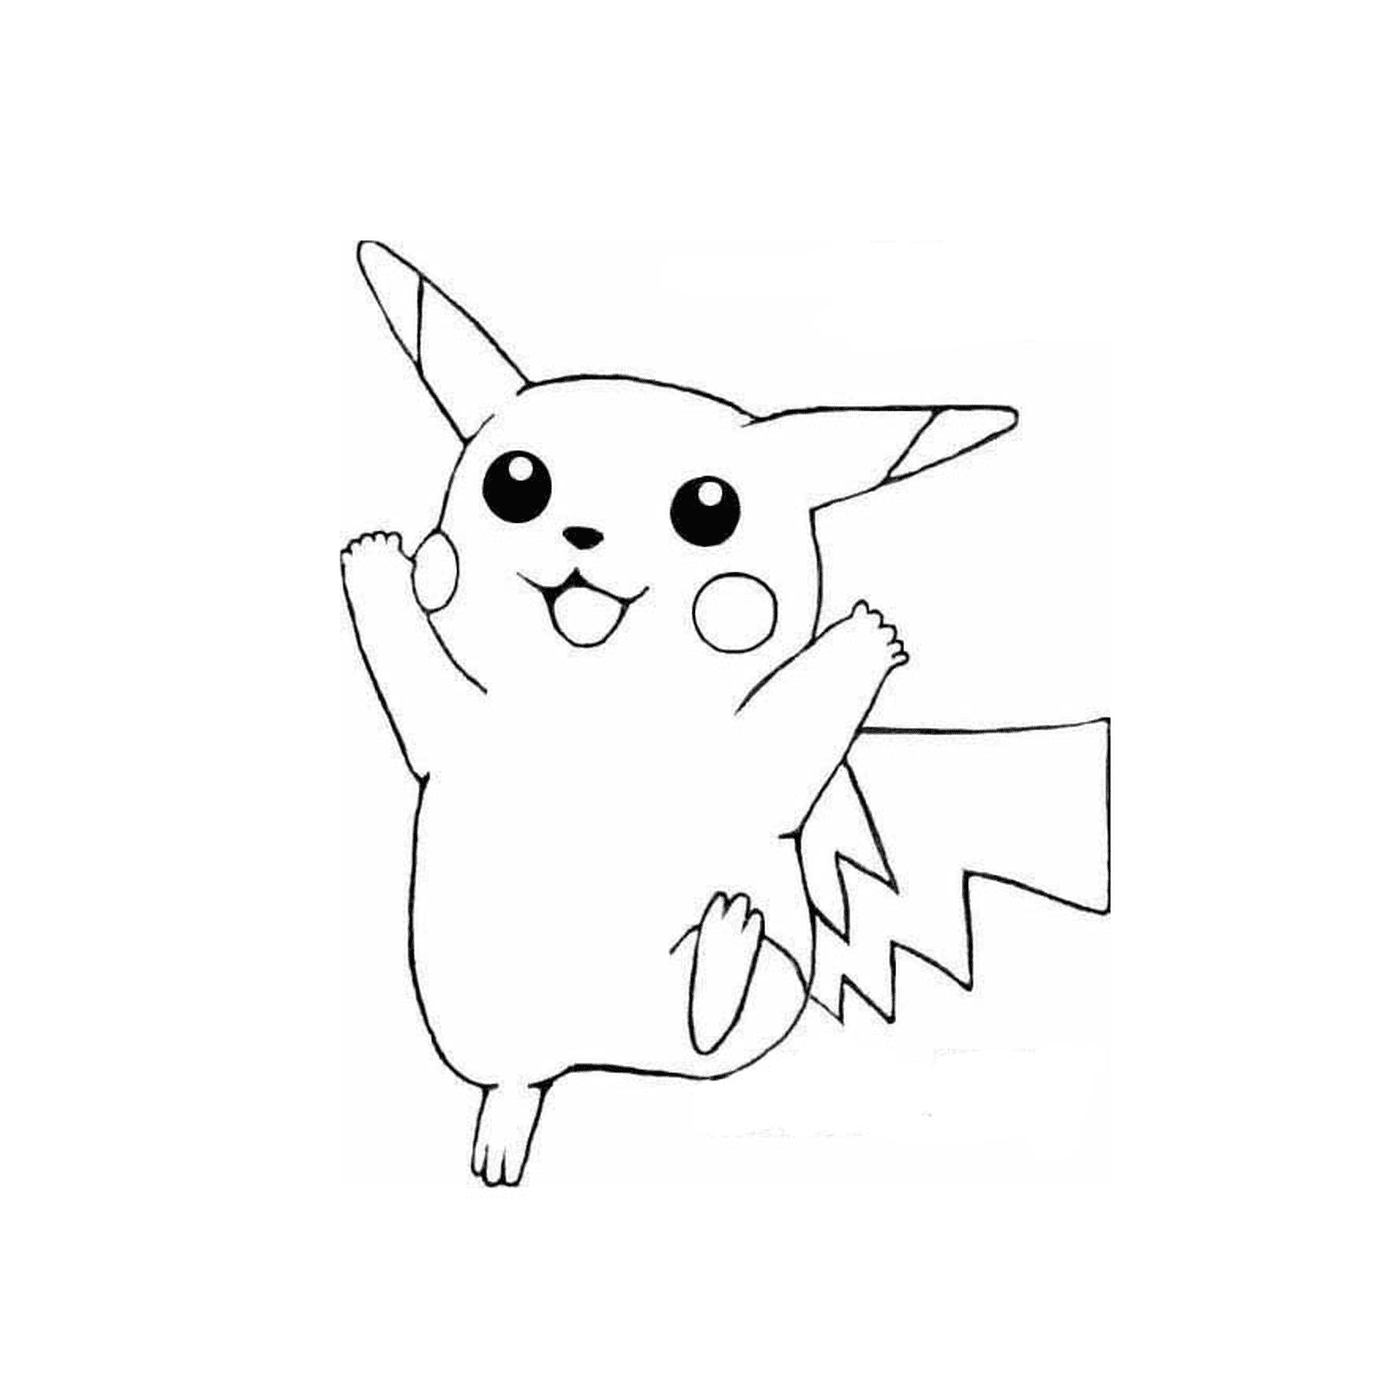   Pikachu, le compagnon Pokémon 